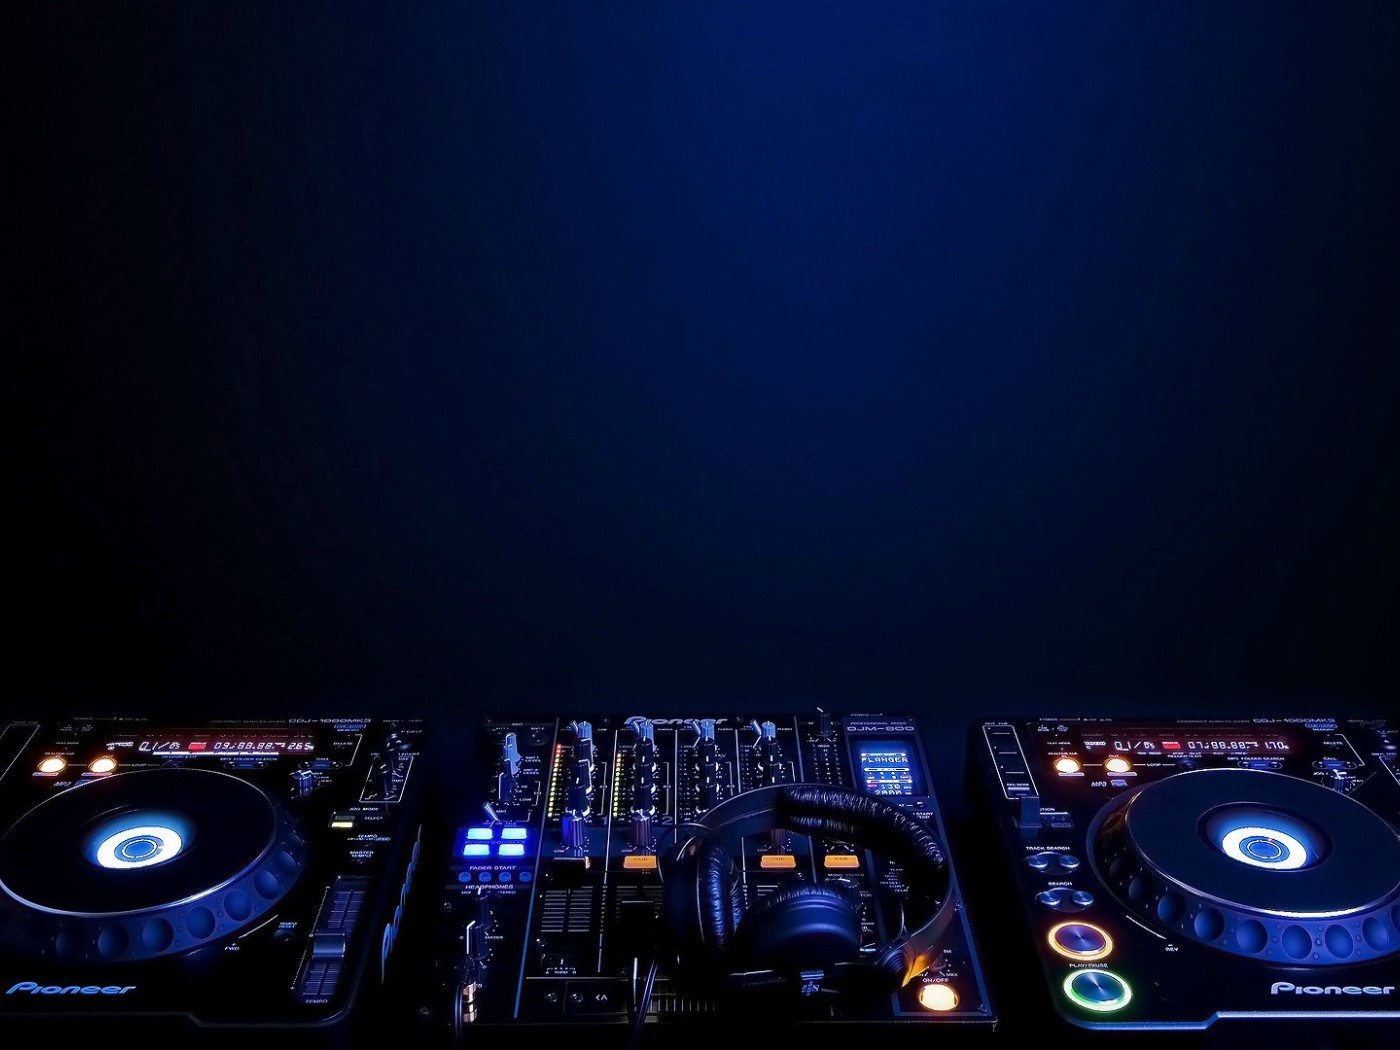 House music DJ decks HD Wallpaper